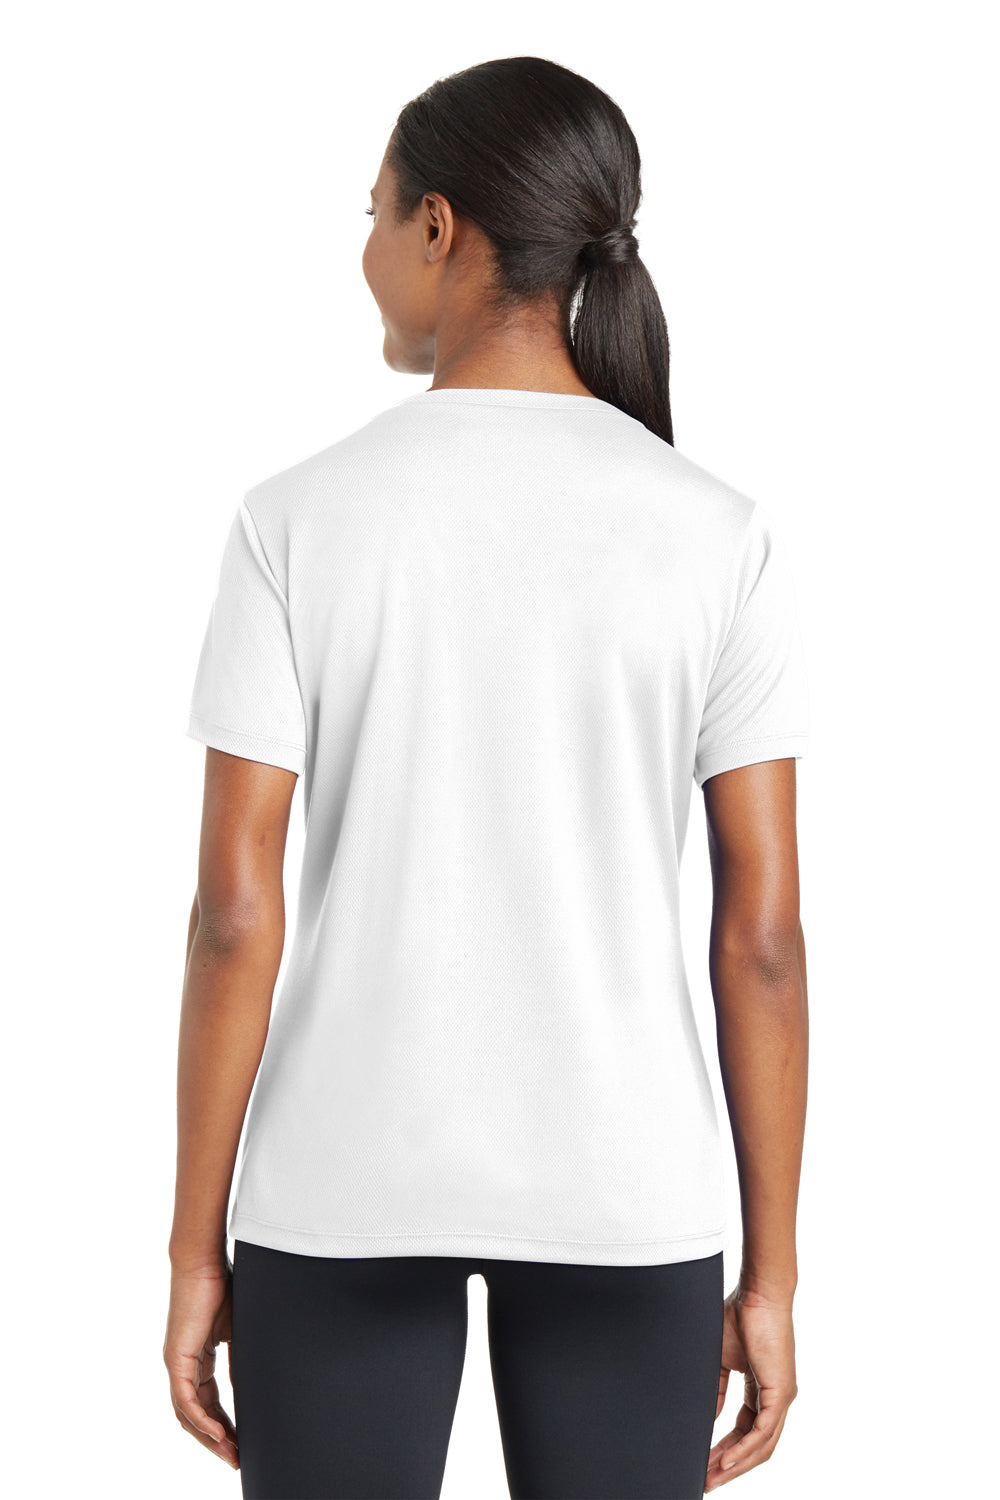 Sport-Tek LST340 Womens RacerMesh Moisture Wicking Short Sleeve V-Neck T-Shirt White Back